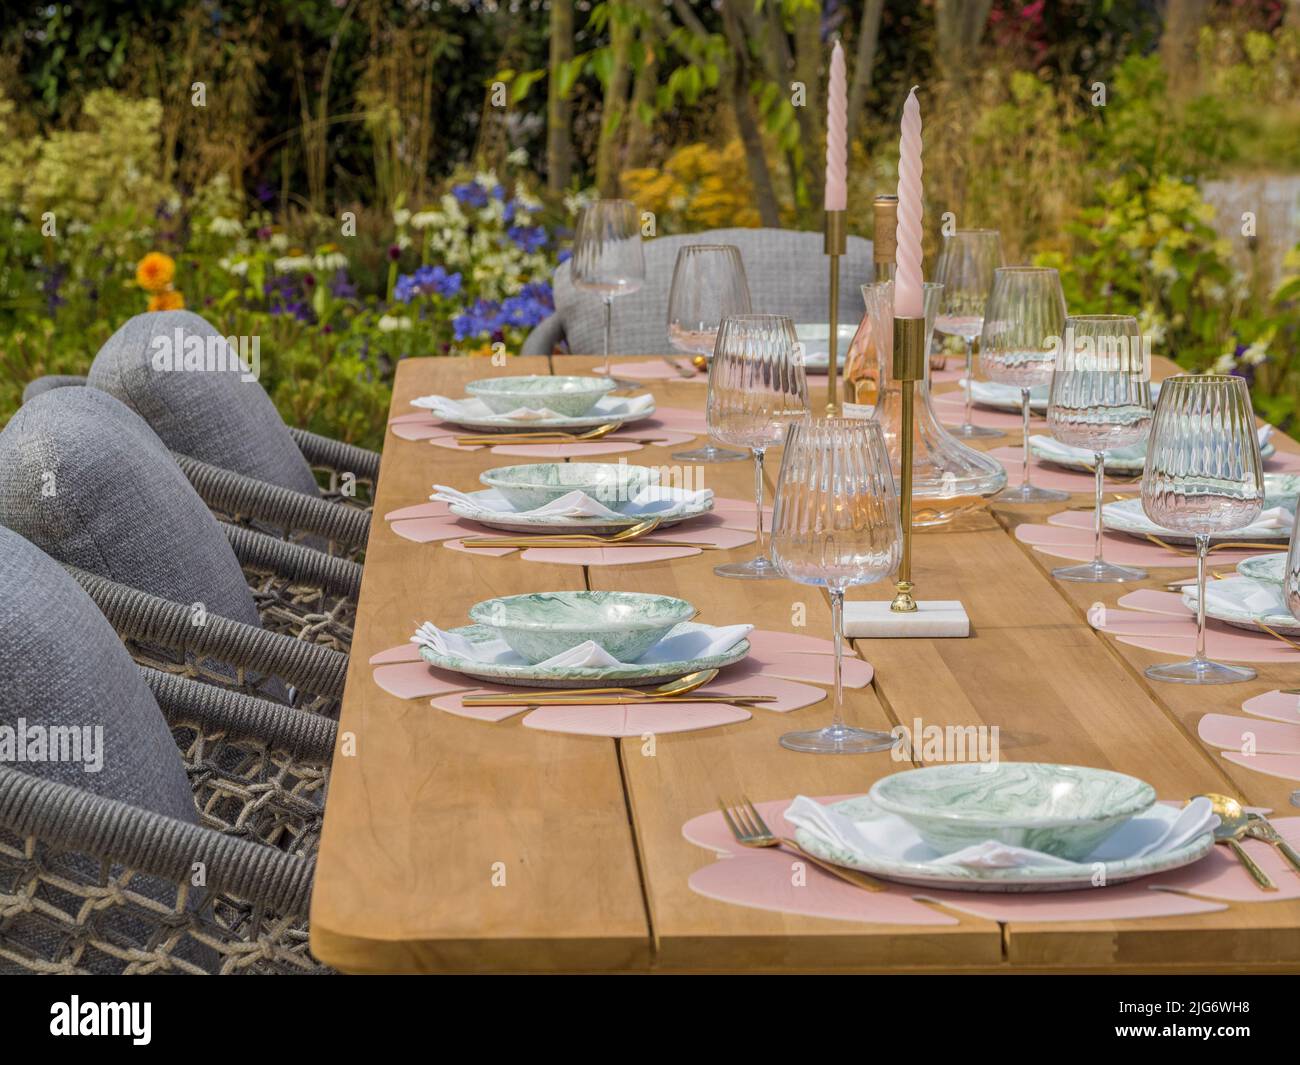 Tavolo da giardino in legno allestito per una cena in un giardino con spettacolo all'Hampton Court Palace Garden Festival. Londra. Foto Stock